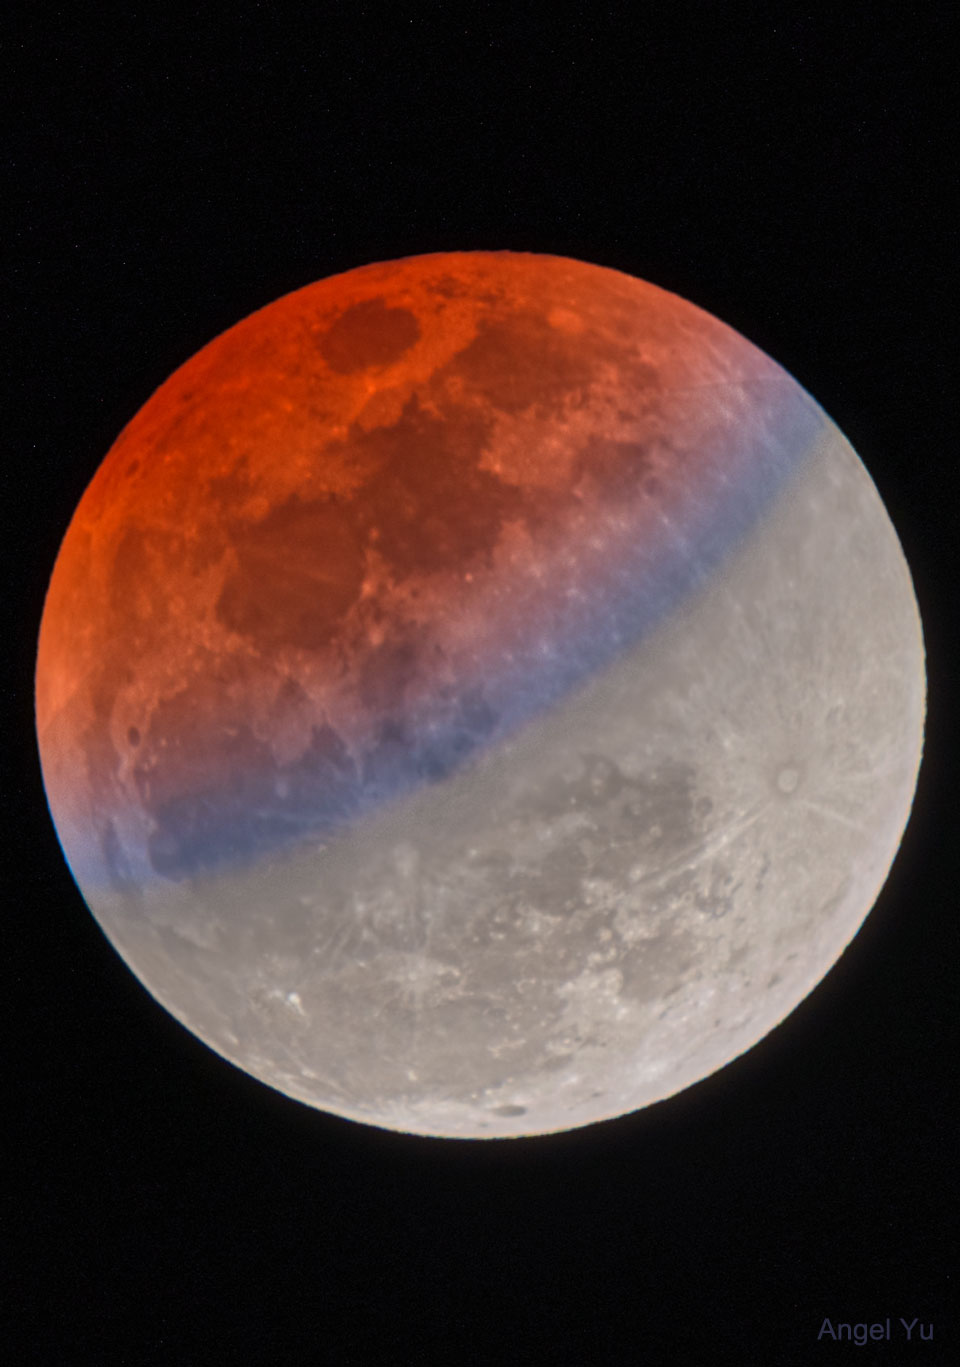 Zdjęcie pokazuje ostatnie częściowe zaćmienie Księżyca. Jego zaćmiona część ma czerwoną barwę
z niebieskim pasem ze względu na refrakcję światła słonecznego w atmosferze Ziemi. Zobacz opis.
Po kliknięciu na obrazek załaduje się wersja o największej dostępnej rozdzielczości.